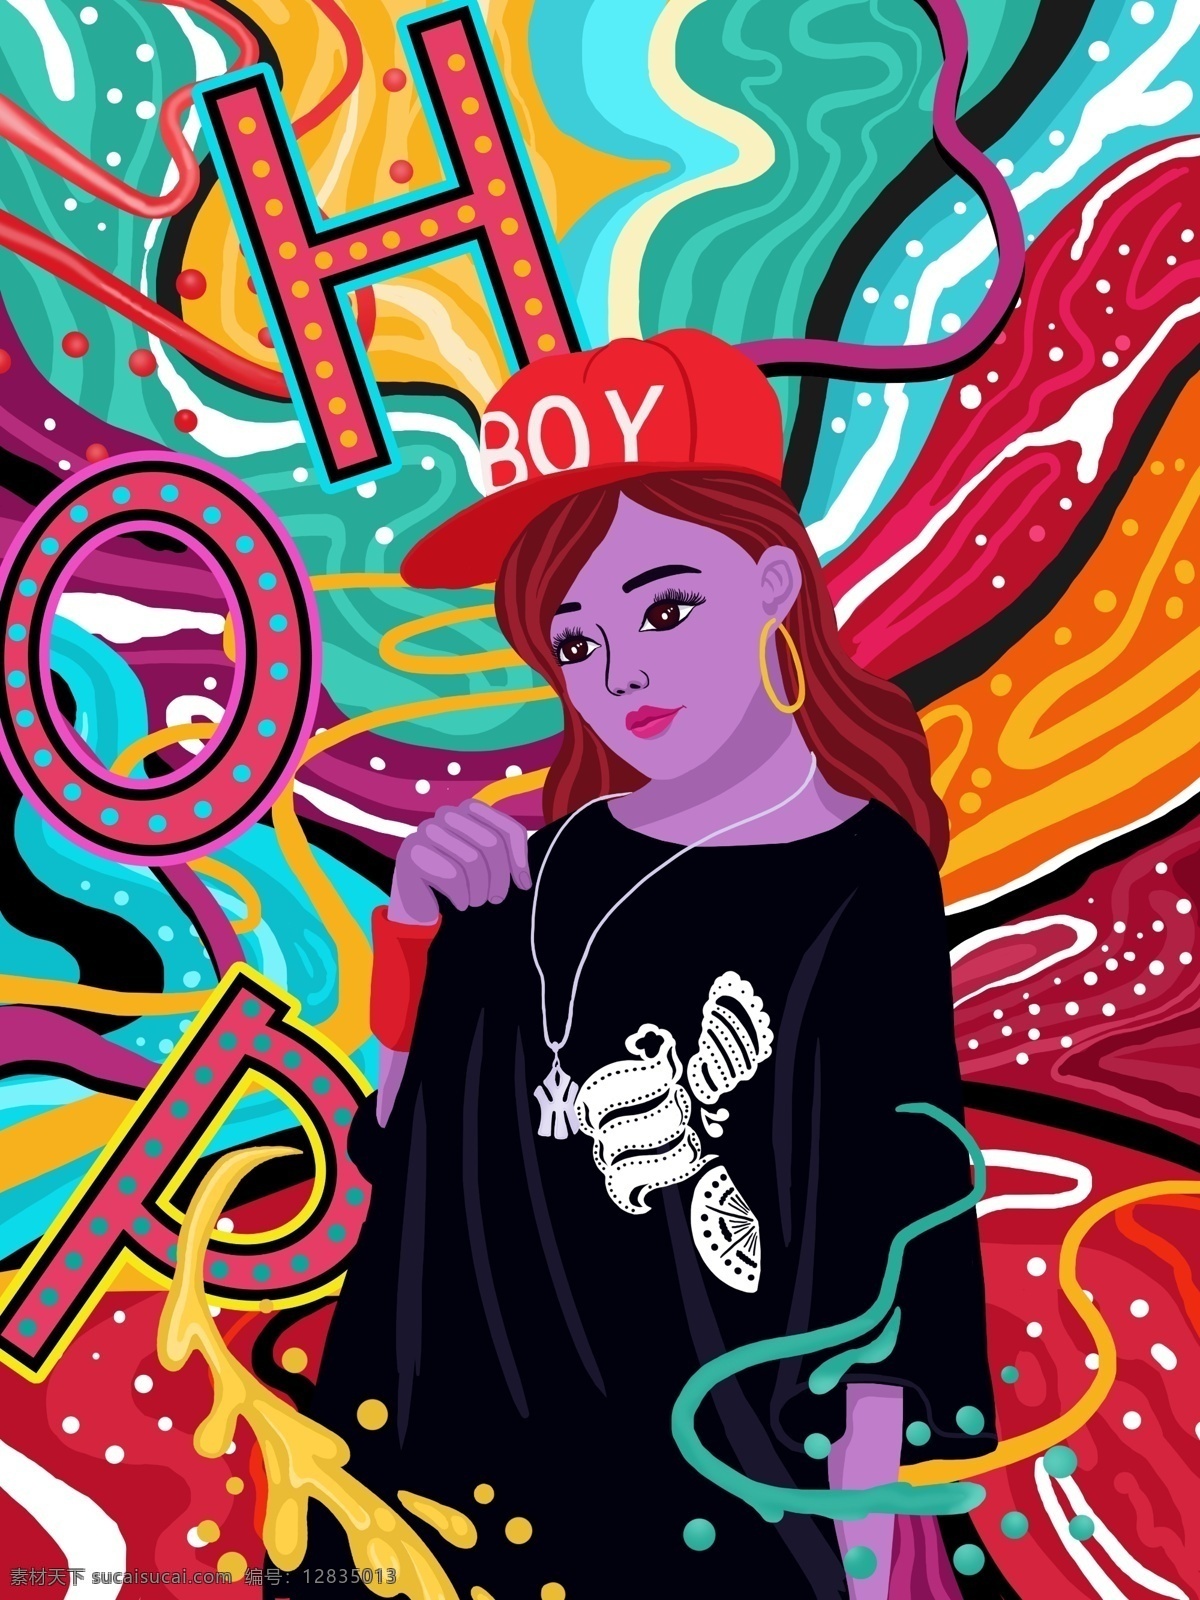 流动 糖果 色 嘻哈 女孩 系列 插画 糖果色 流动的色彩 绚丽多彩 hop 微信用图 流动的糖果色 嘻哈女孩 嘻哈女孩插画